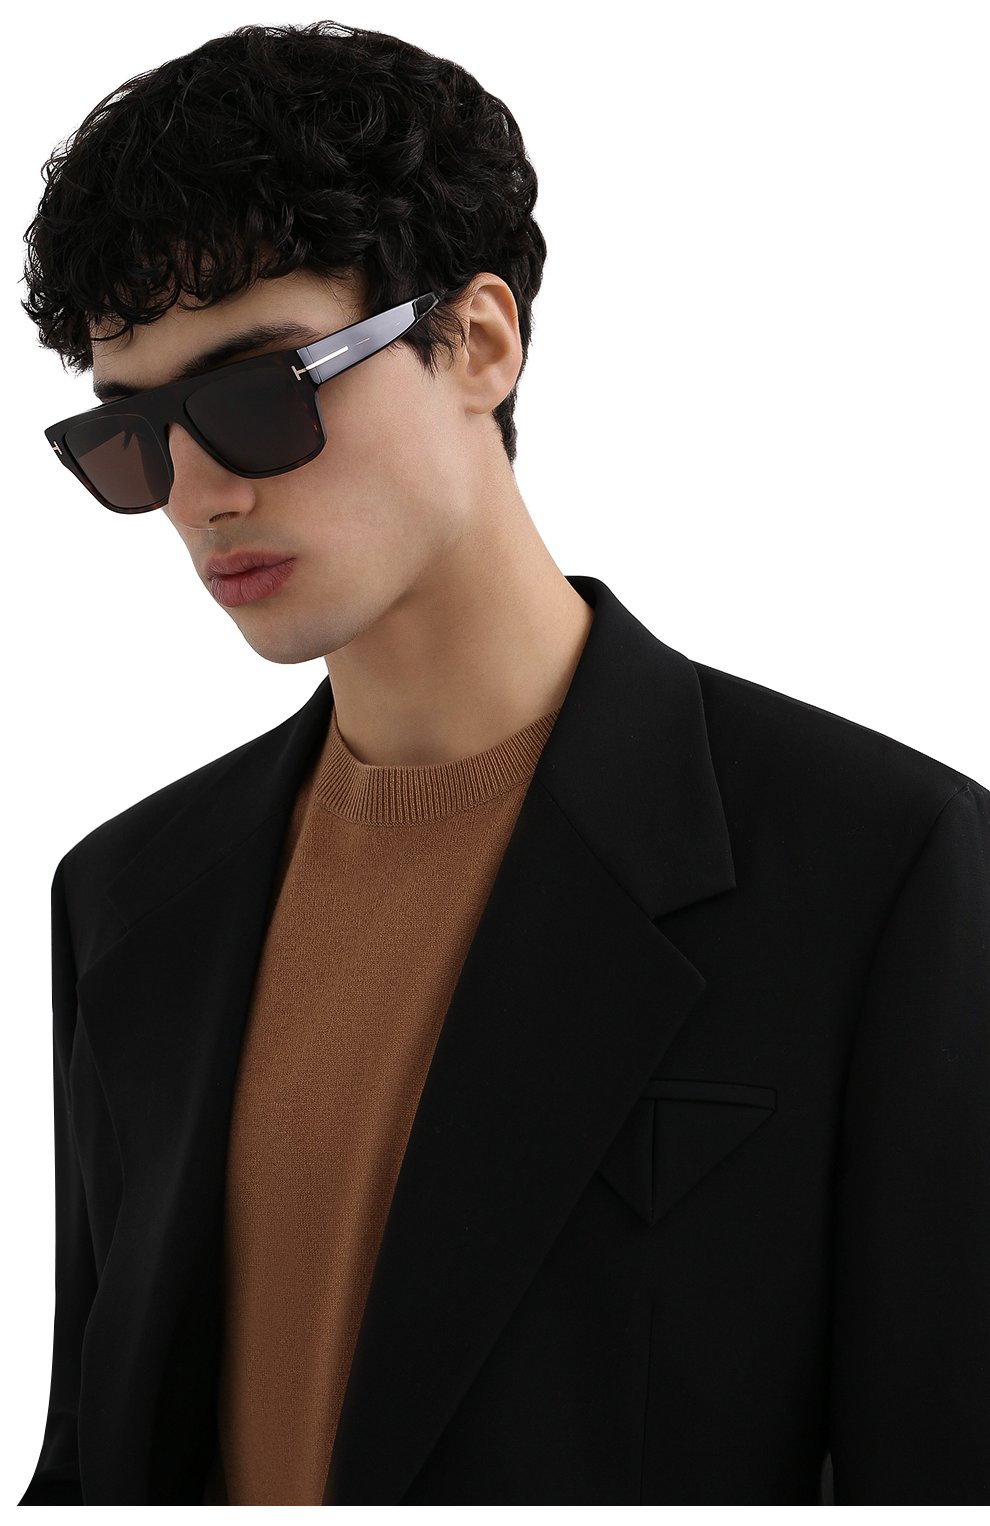 Мужские коричневые солнцезащитные очки TOM FORD купить в интернет-магазине  ЦУМ, арт. TF907 52E